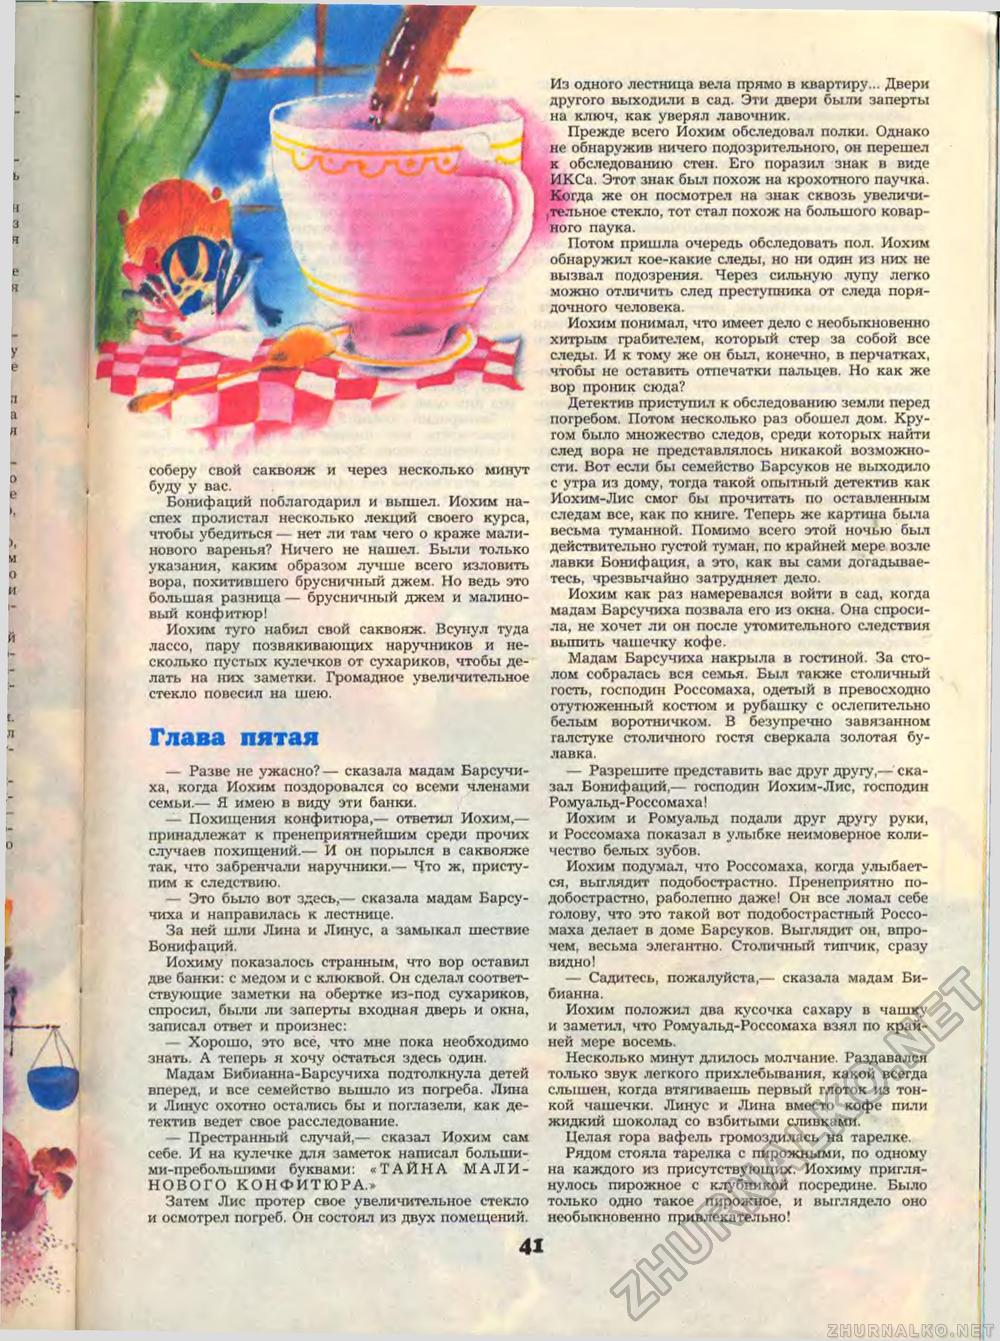  1989-05,  43